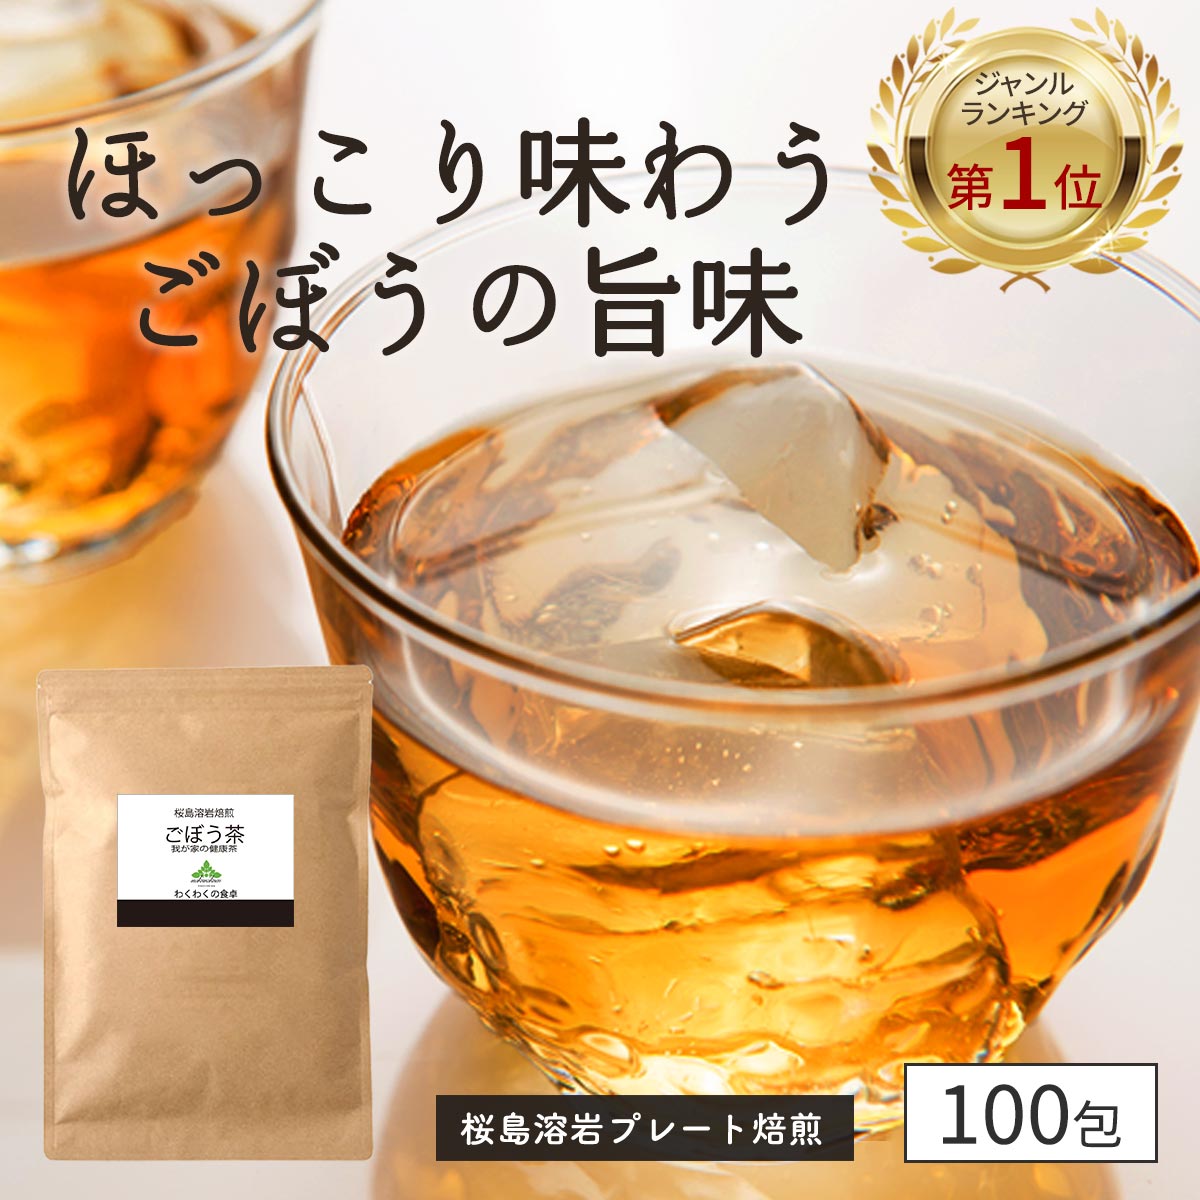 PREMIUM どっさりダイエット茶(2g×14包入) 【正規品】